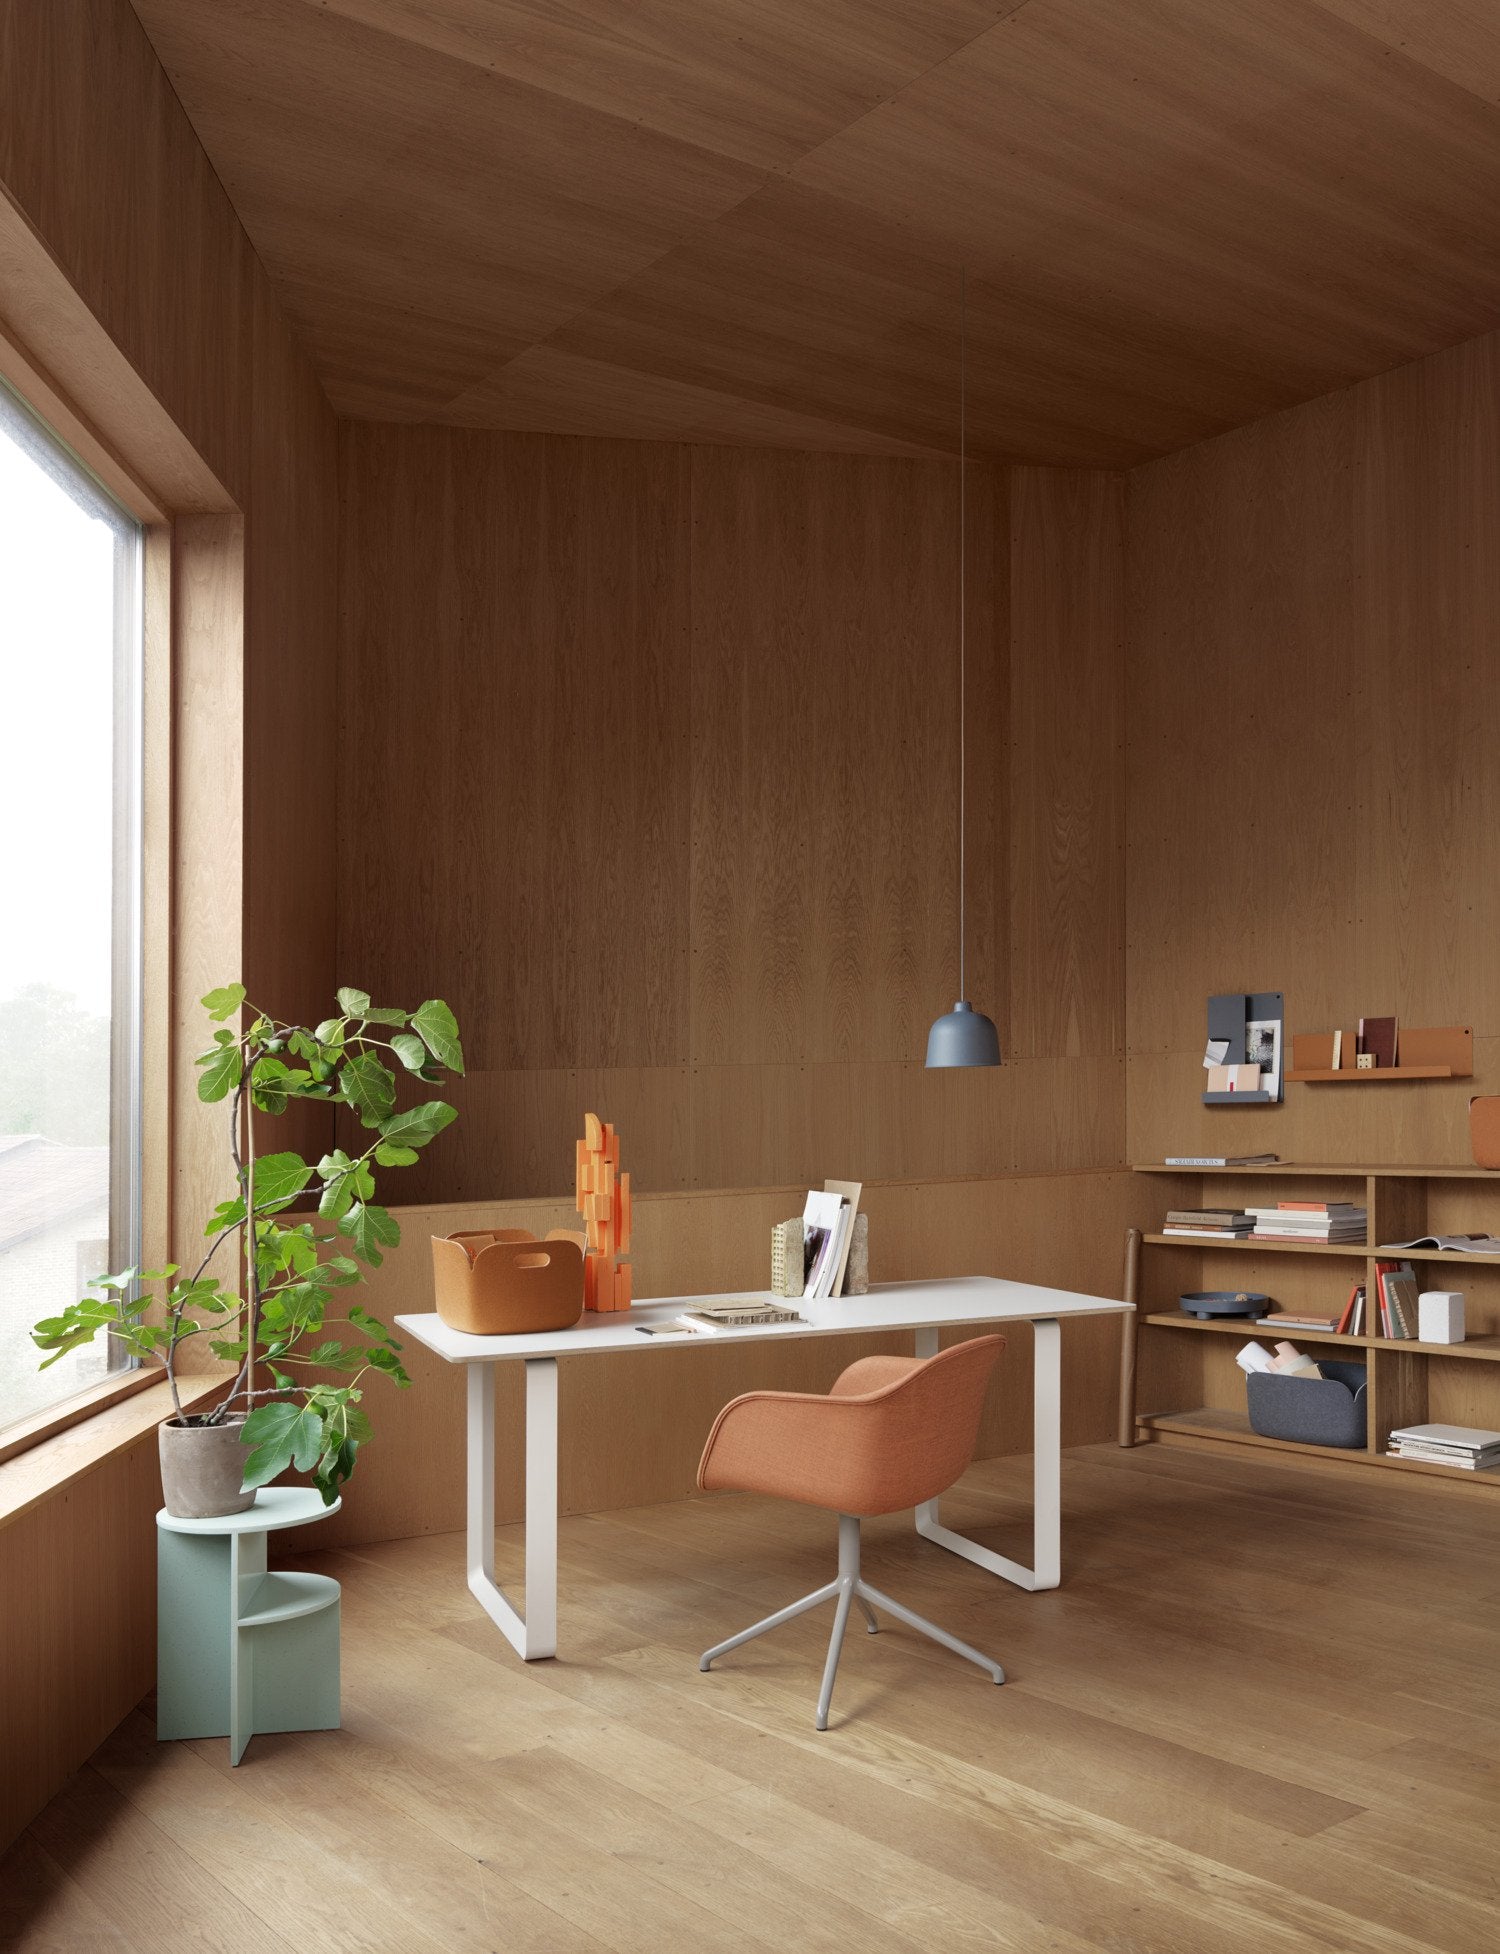 70/70 Tisch 295 cm in Weiss präsentiert im Onlineshop von KAQTU Design AG. Esstisch ist von Muuto